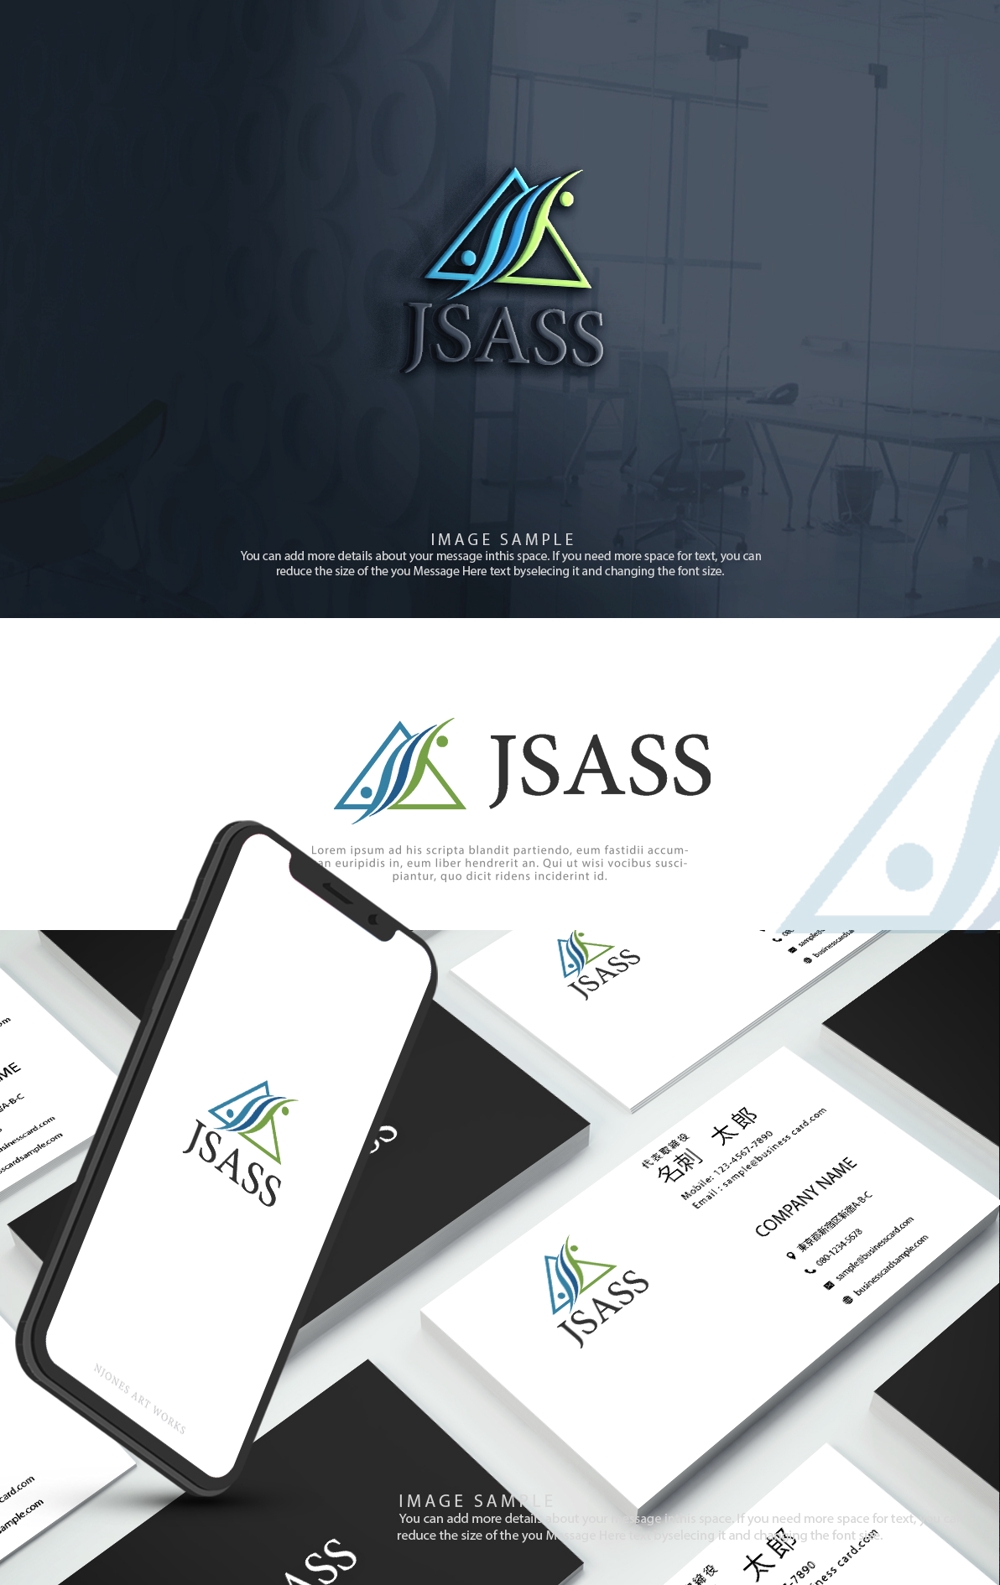 JSASS_06.jpg